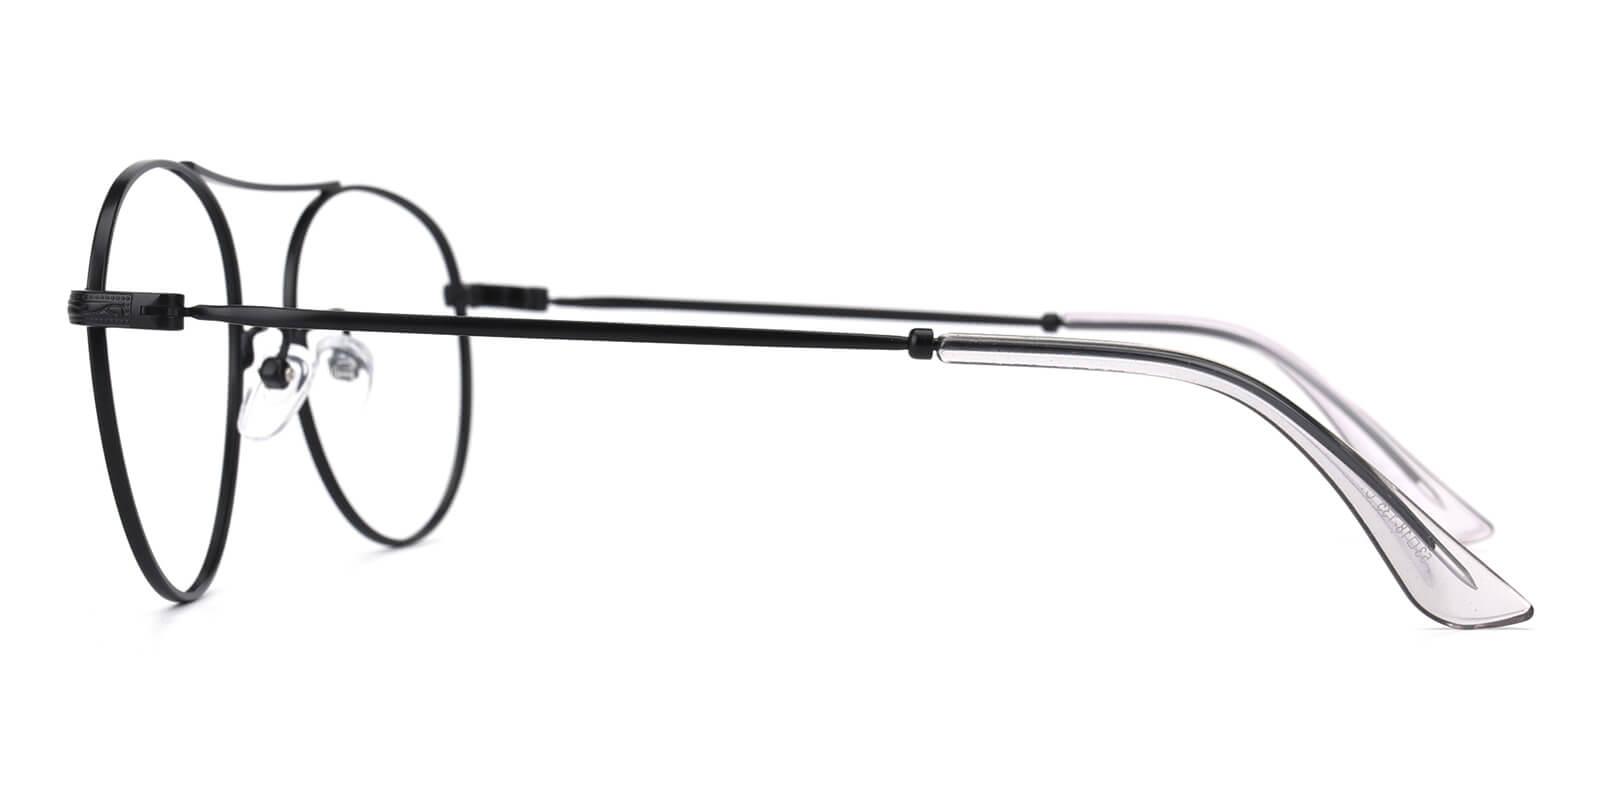 Fleybean-Black-Aviator-Metal-Eyeglasses-detail